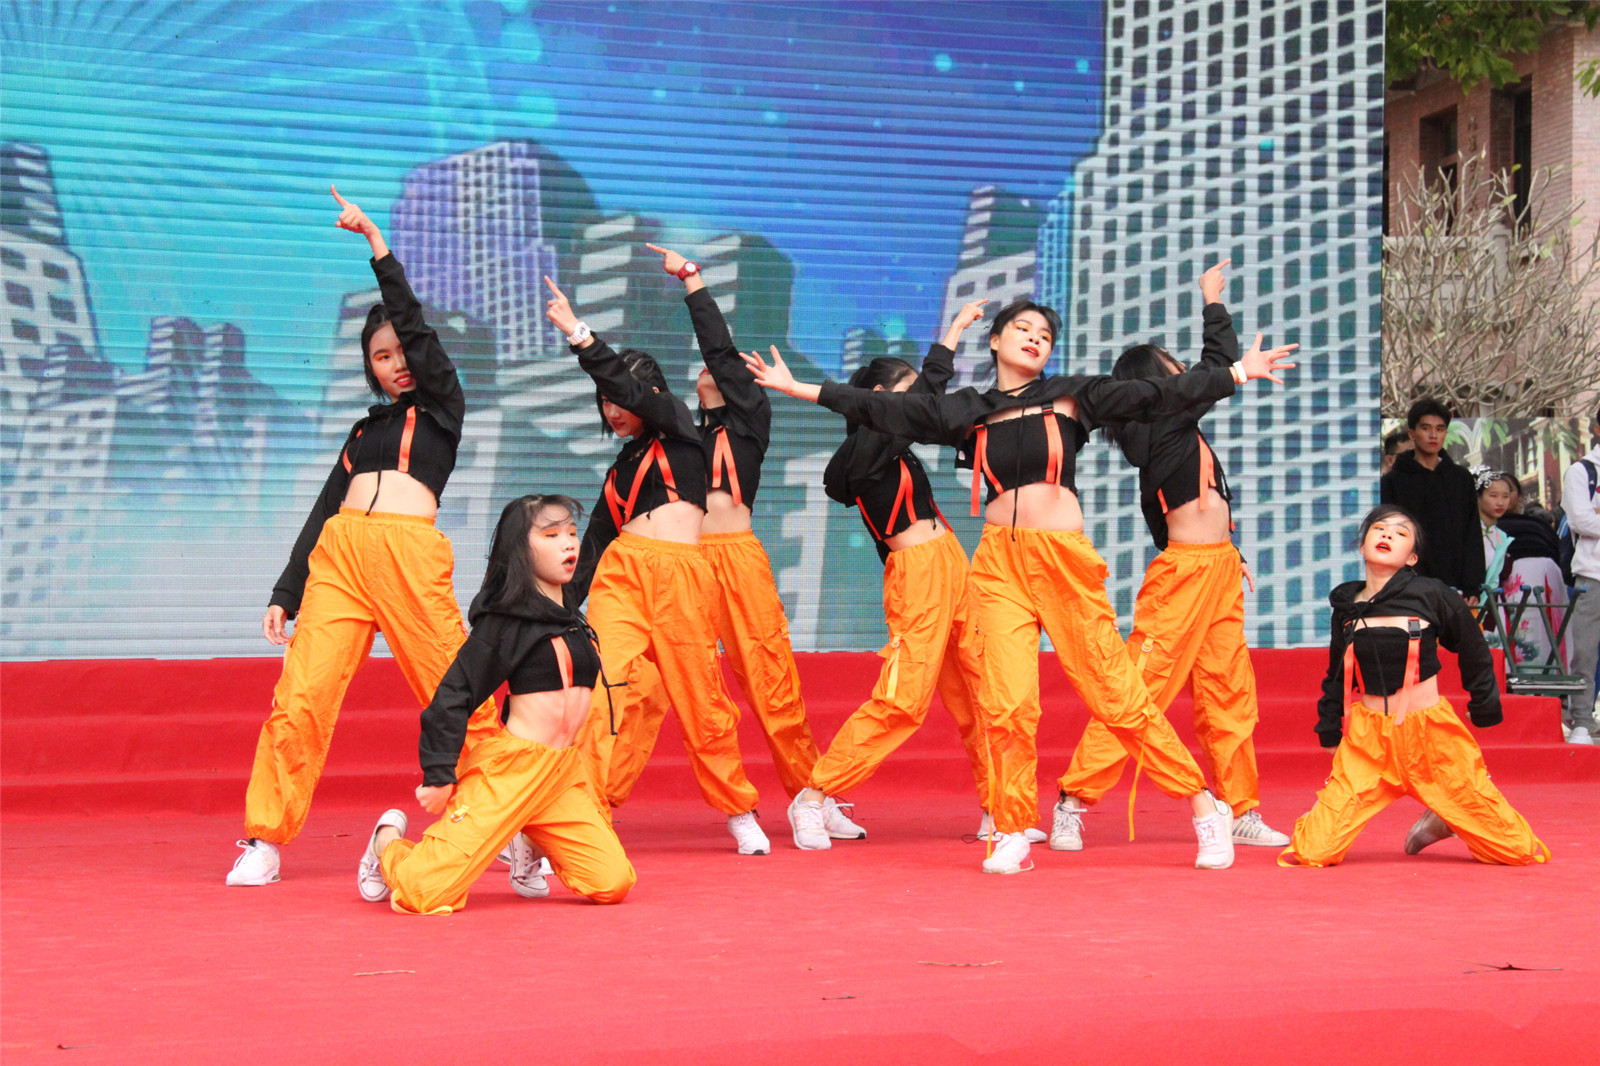 17.学生社团街舞社舞出了新时代青年的青春与活力；.jpg